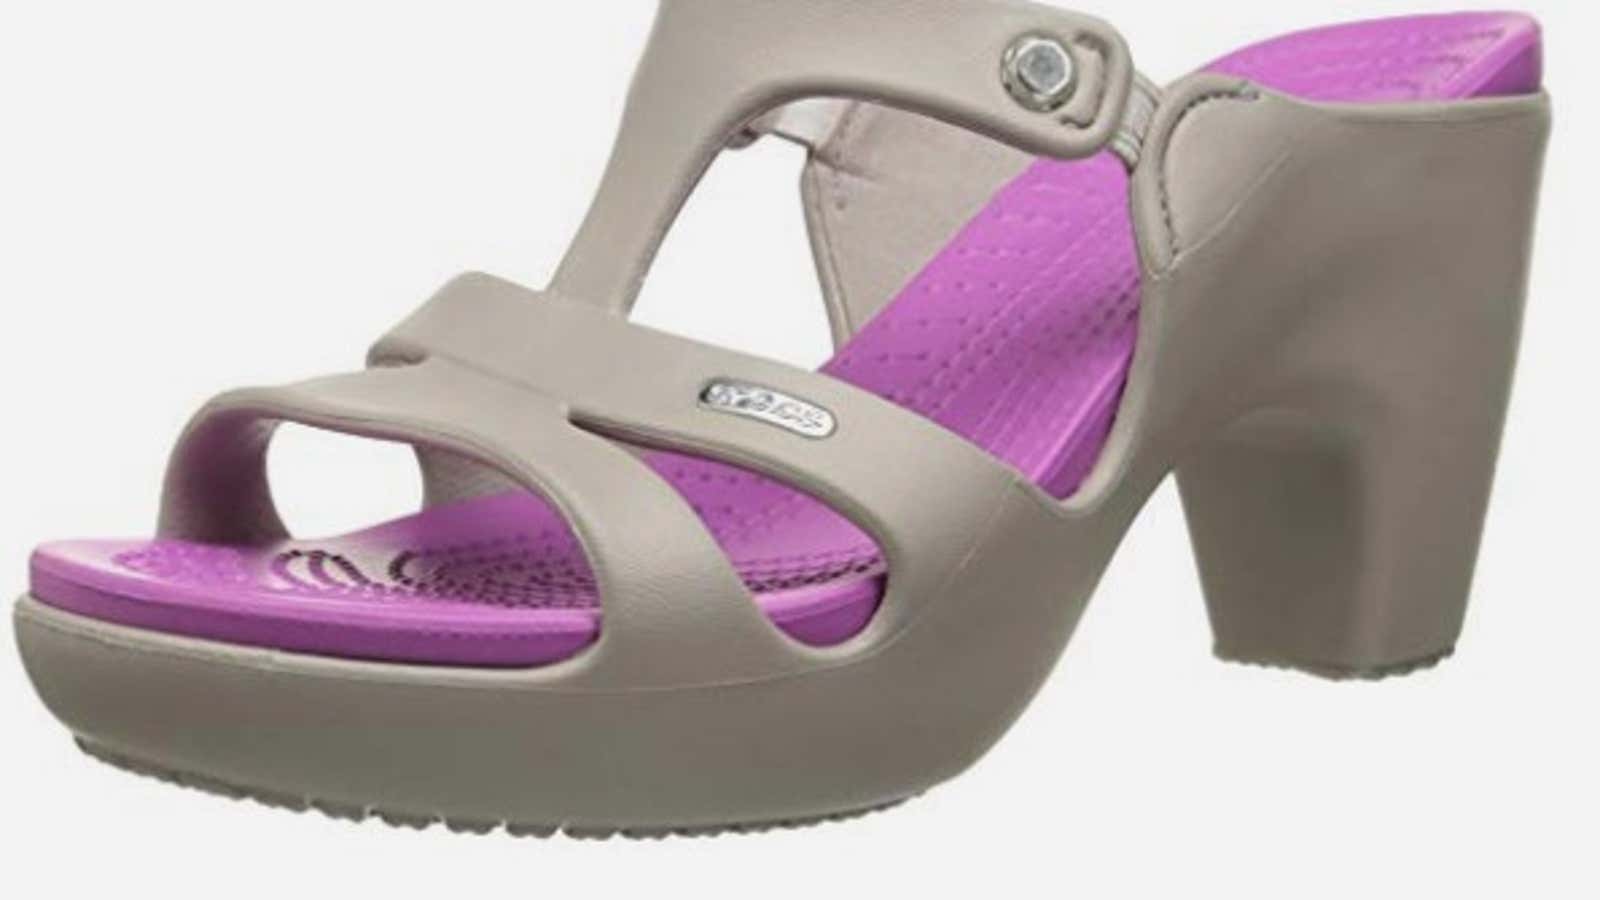 The future of footwear is looking increasingly hideous.